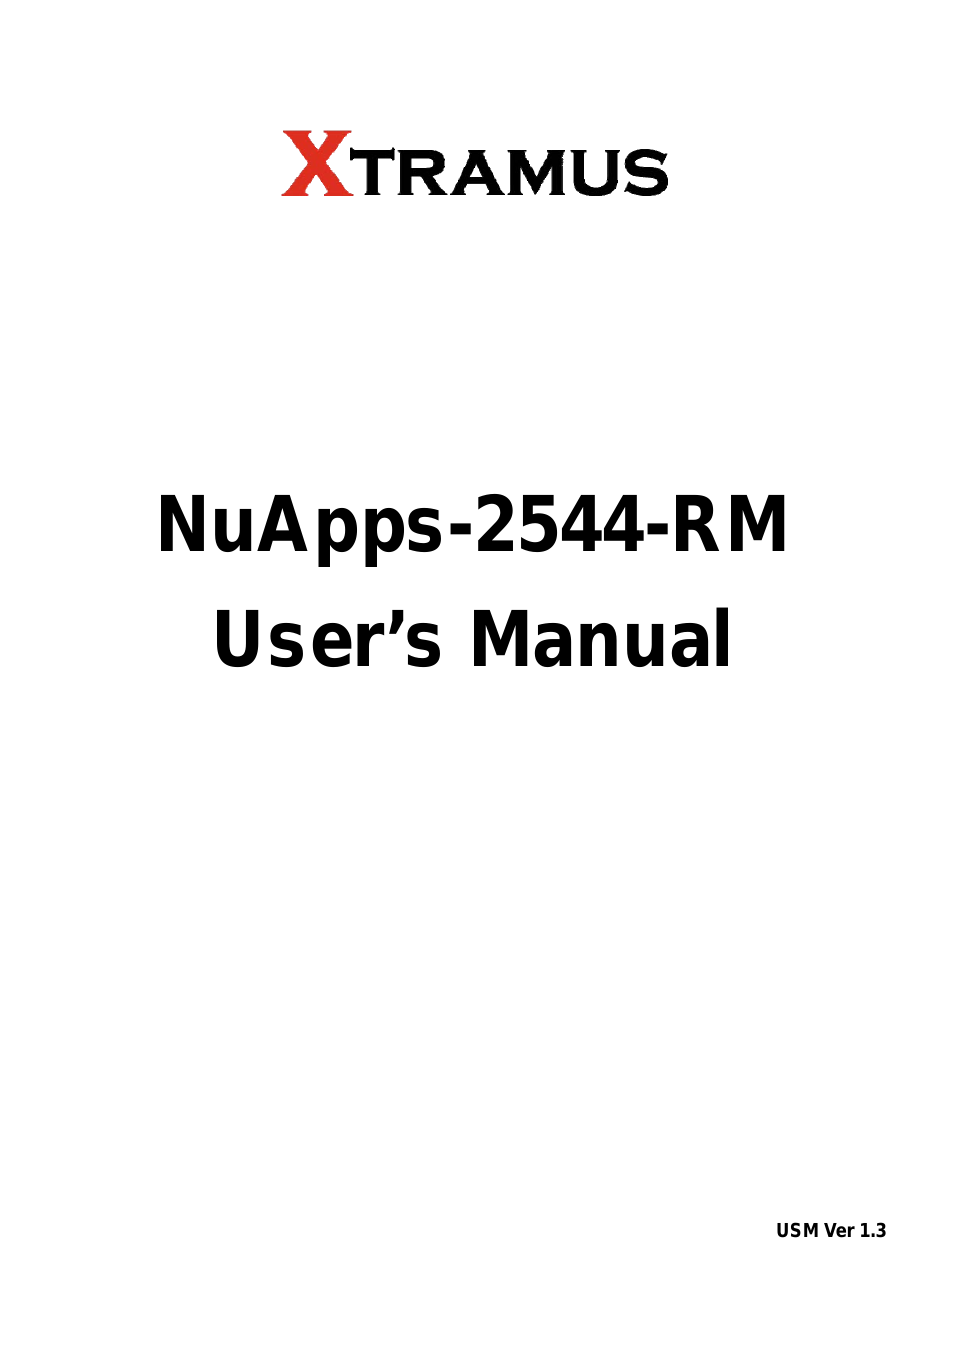 NuApps-2544-RM V1.3